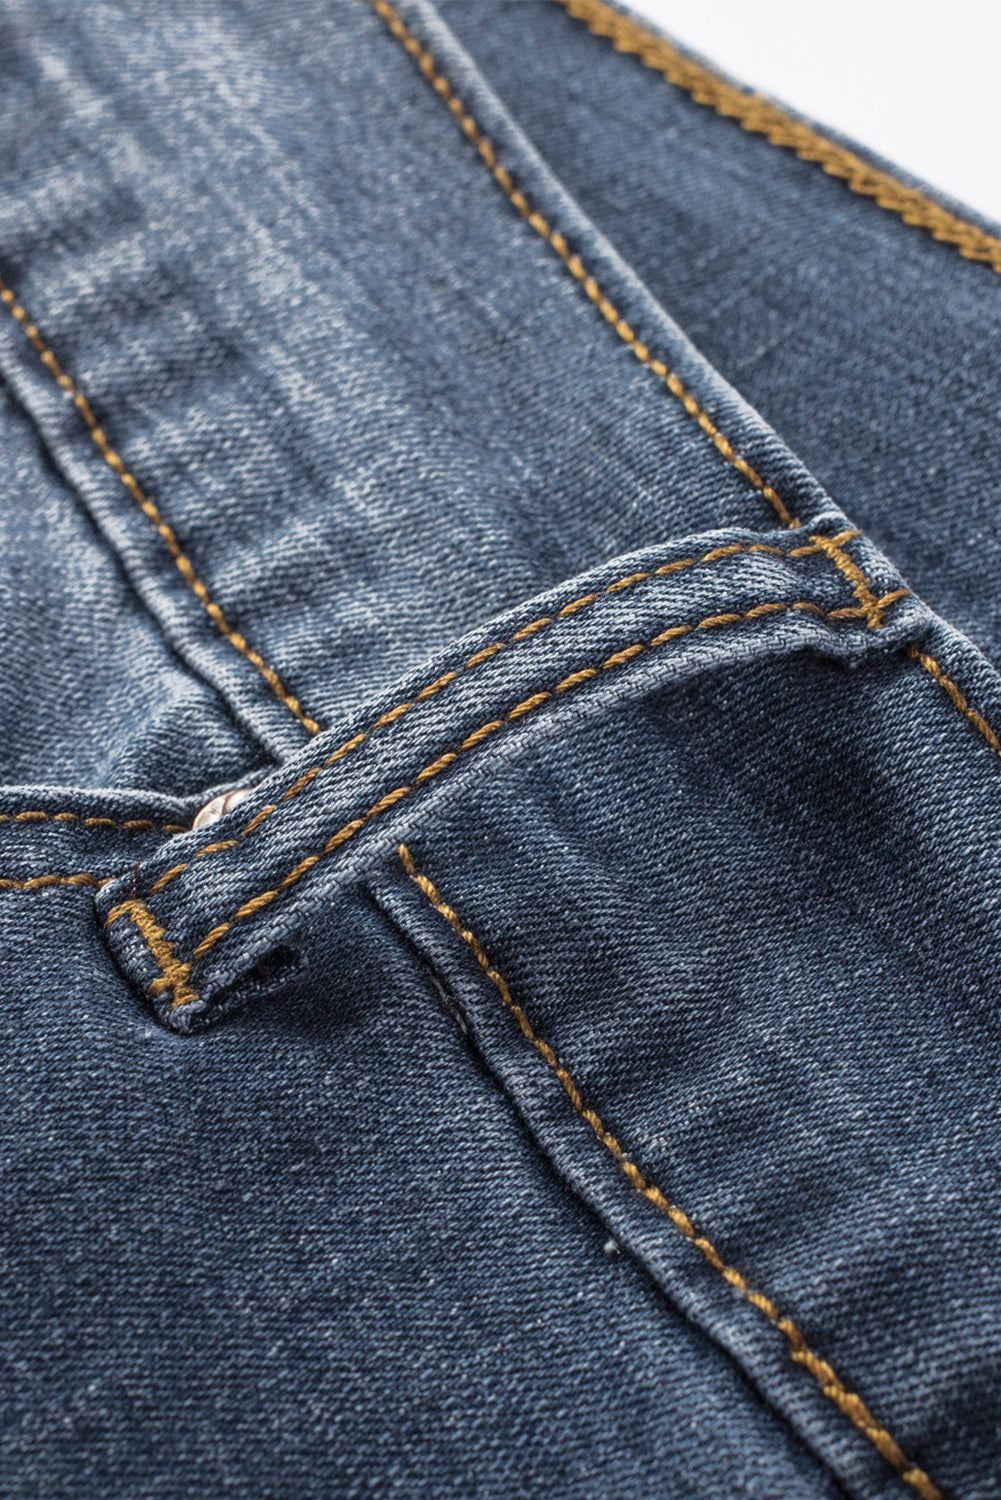 Blue Faith Over Fear Cross Print Distressed Men's Denim Shorts Men's Pants JT's Designer Fashion